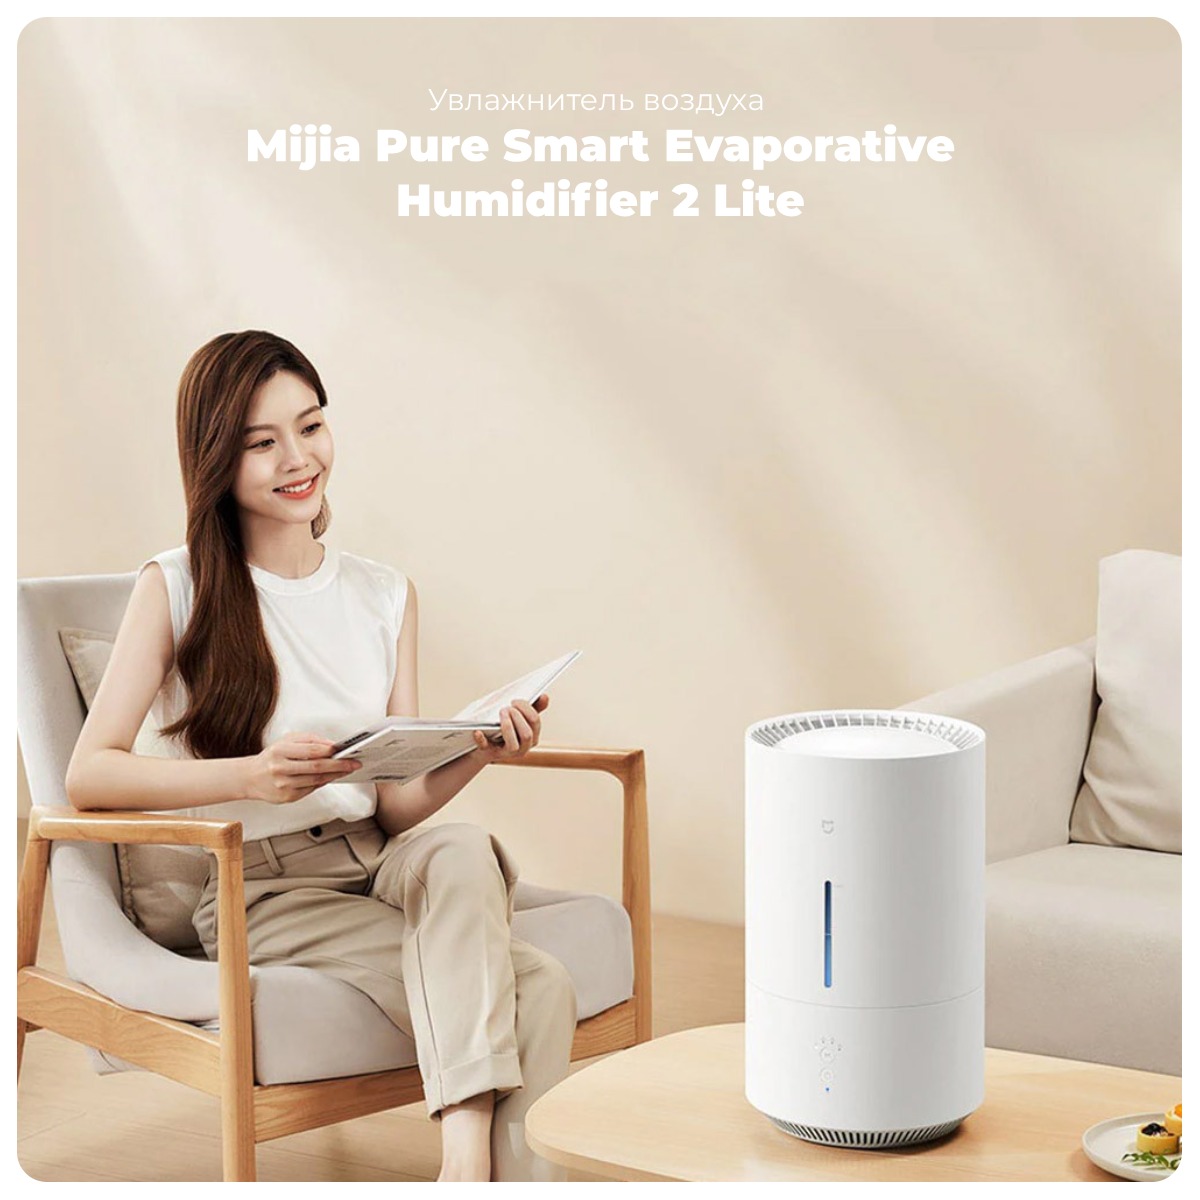 Mijia-Pure-Smart-Evaporative-Humidifier-2-Lite-01